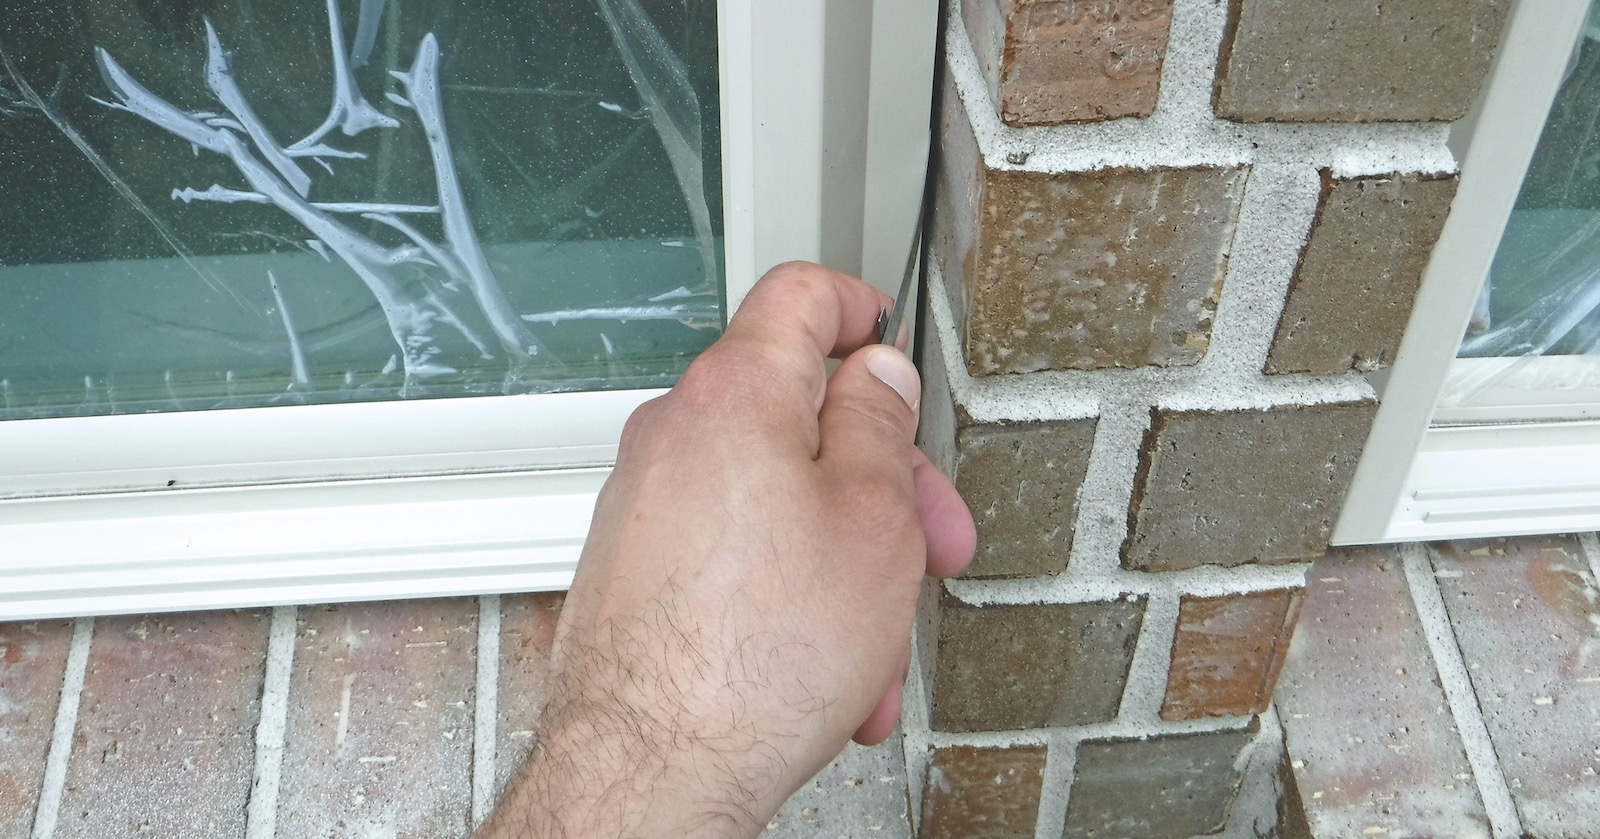 Expansion gap between window and masonry wall 